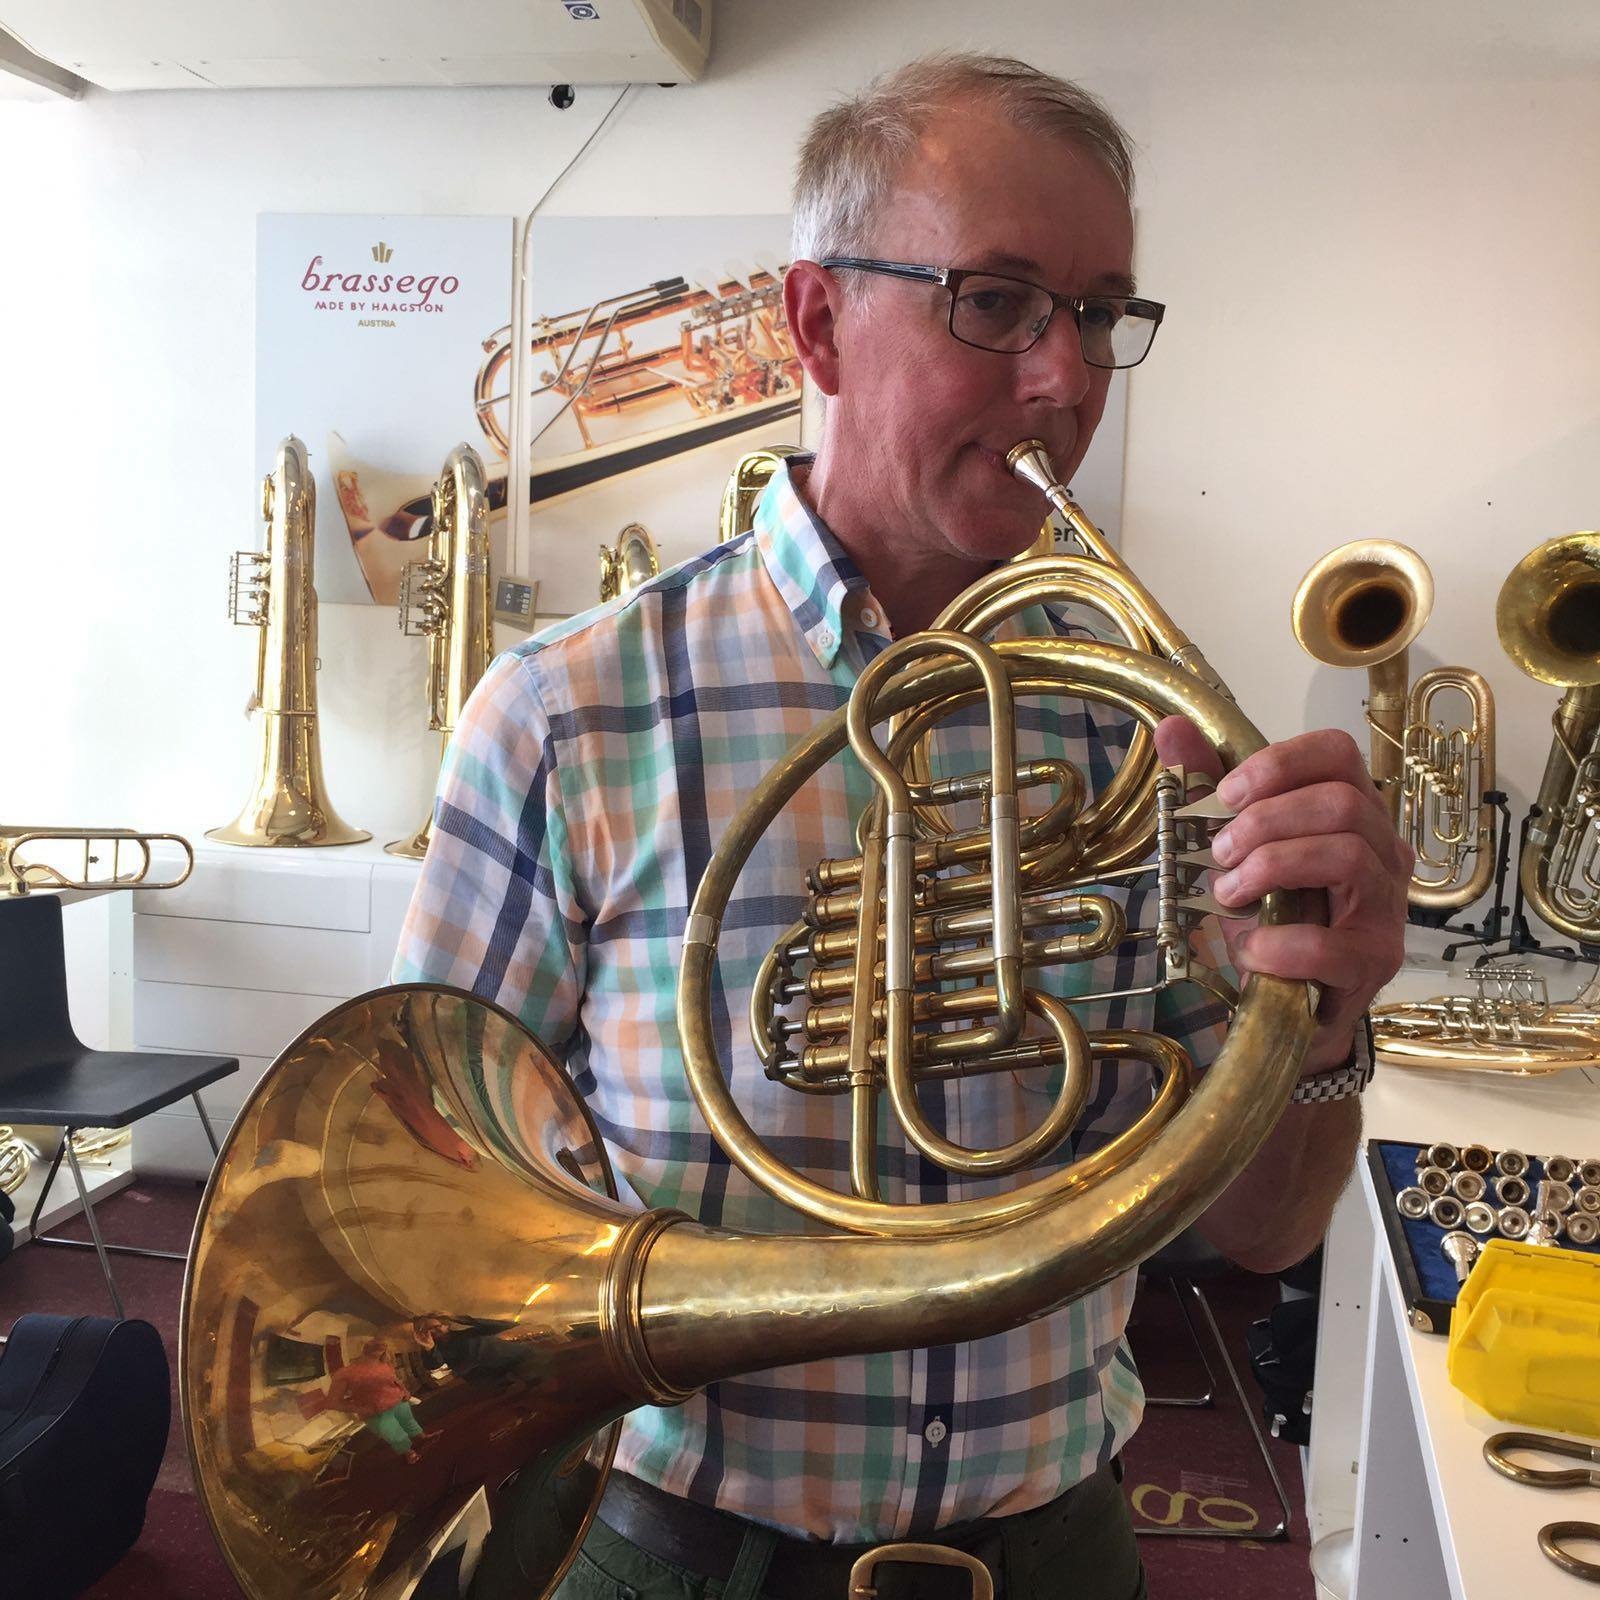 Tim Barrett -Vienna Horns of Scotland - Brassego-Wienerhorn